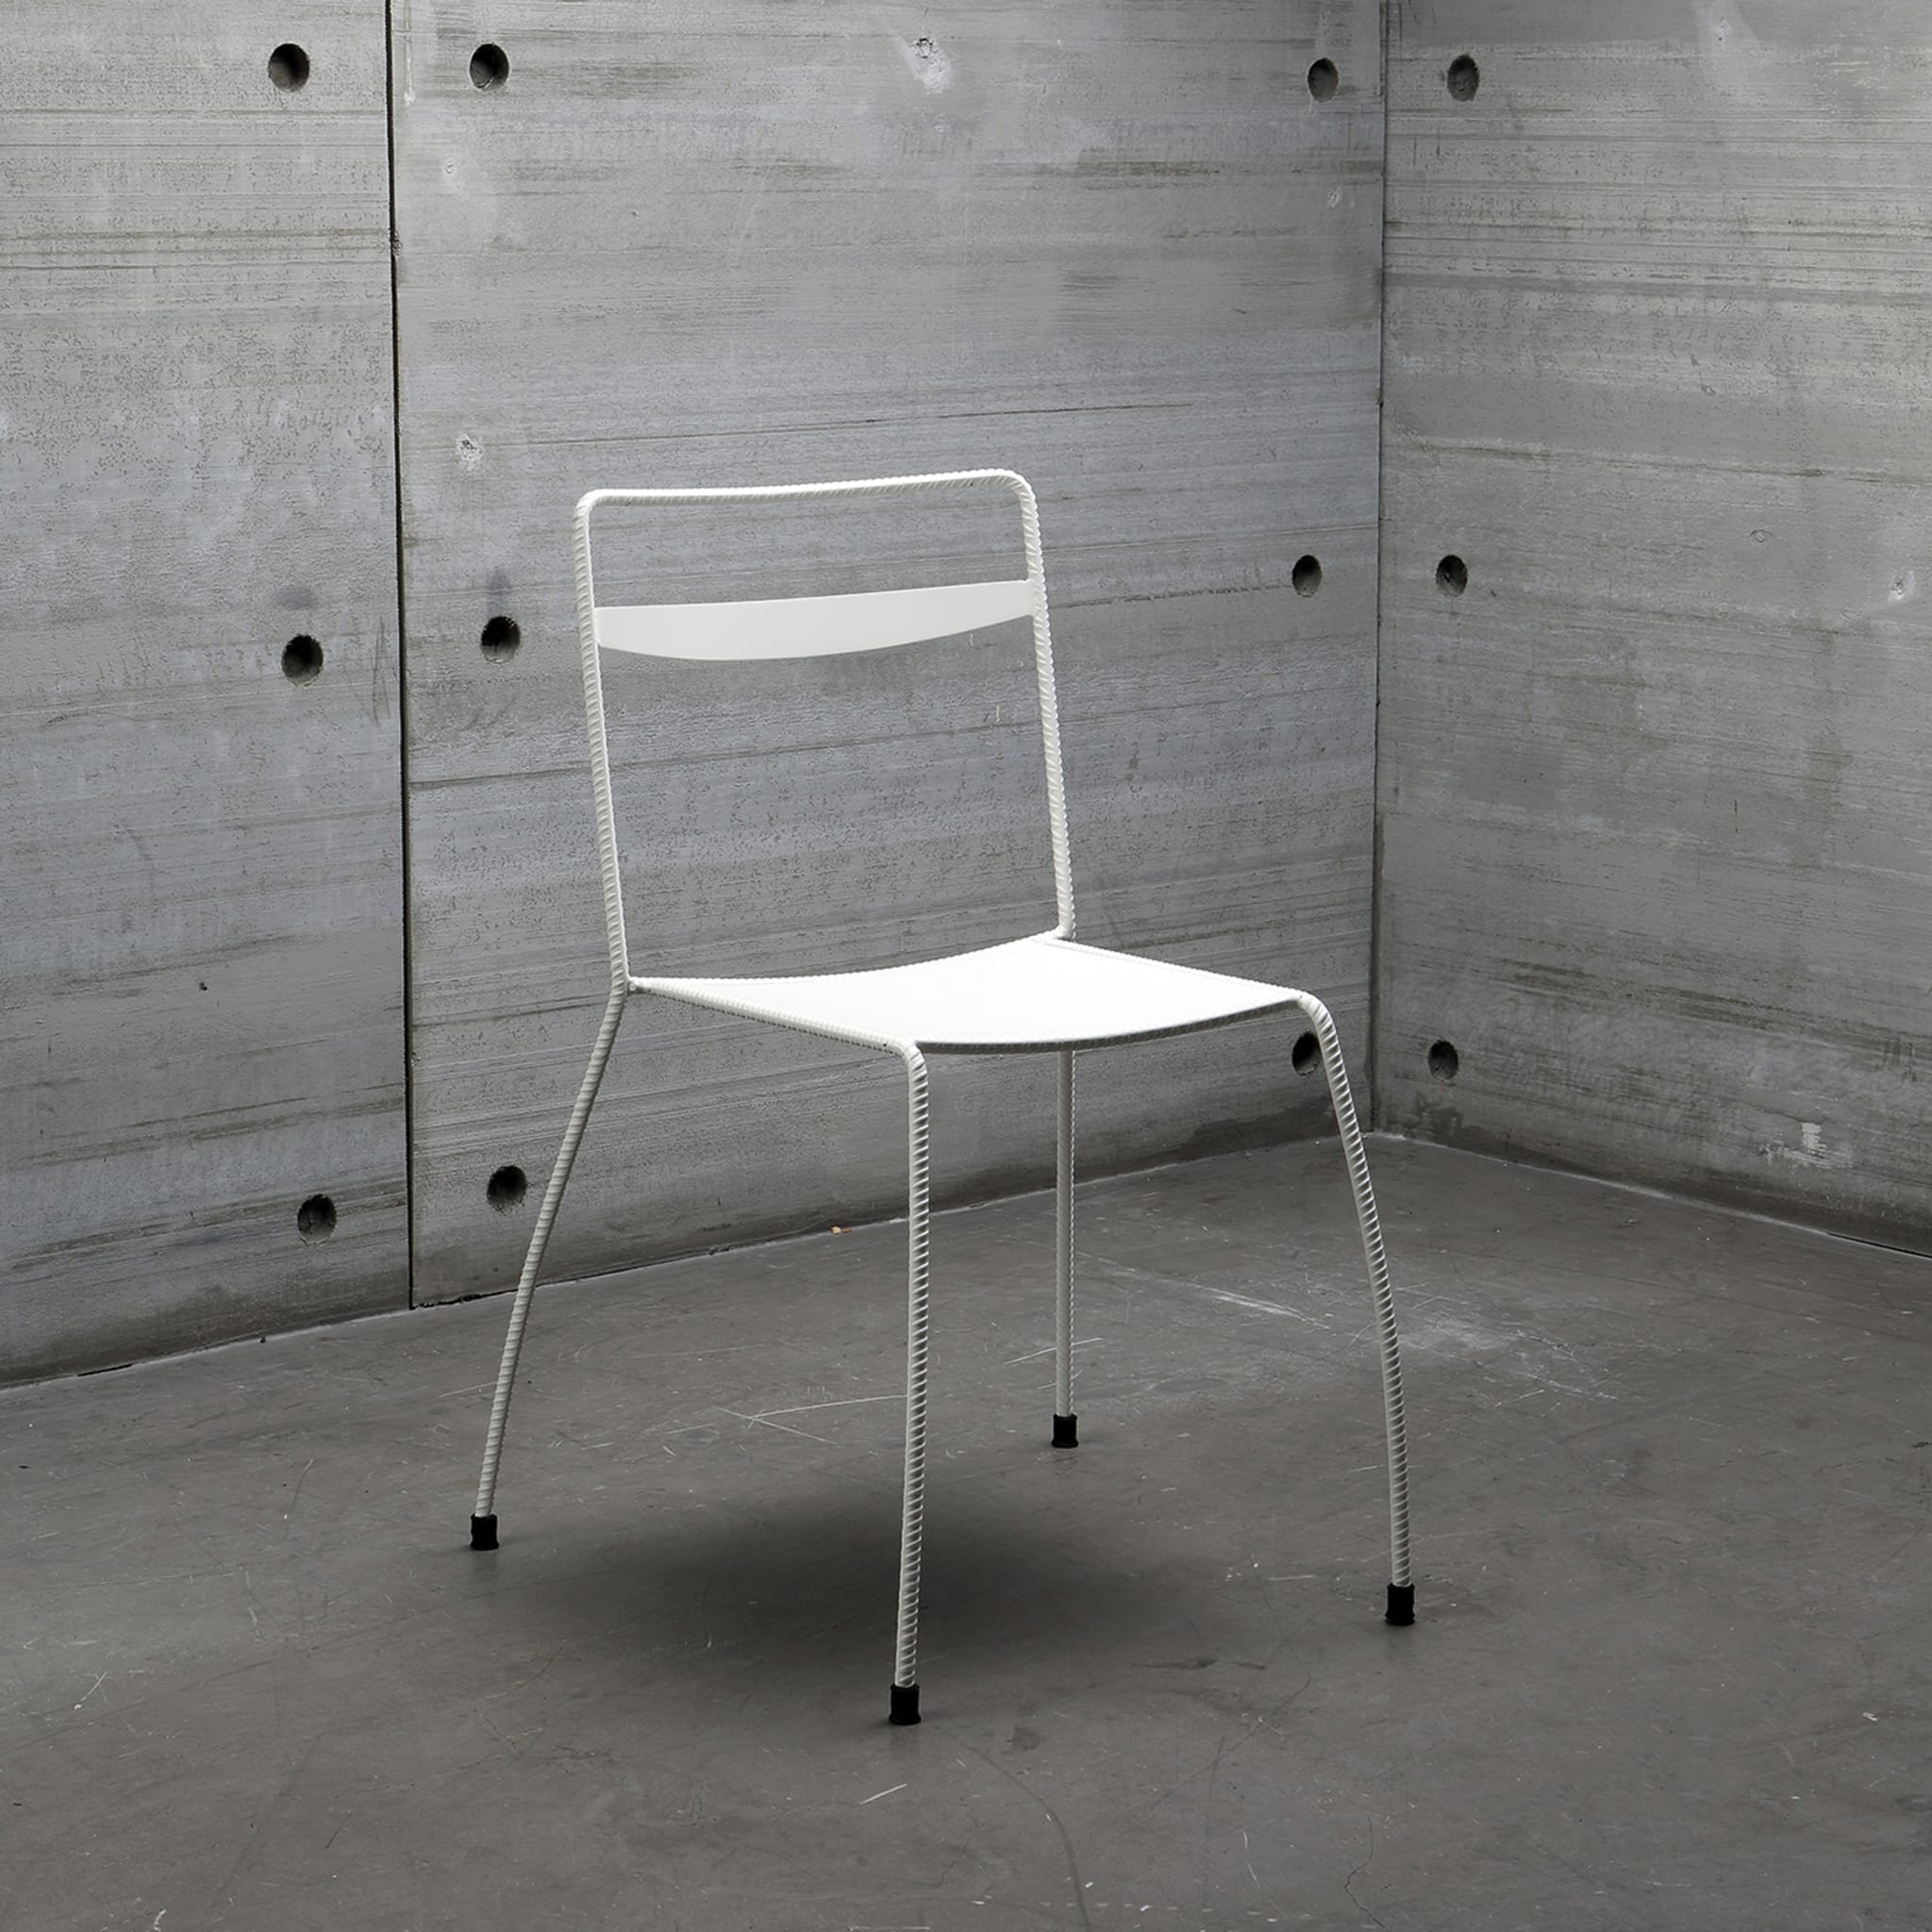 Tondella White Chair by Maurizio Peregalli - Alternative view 1